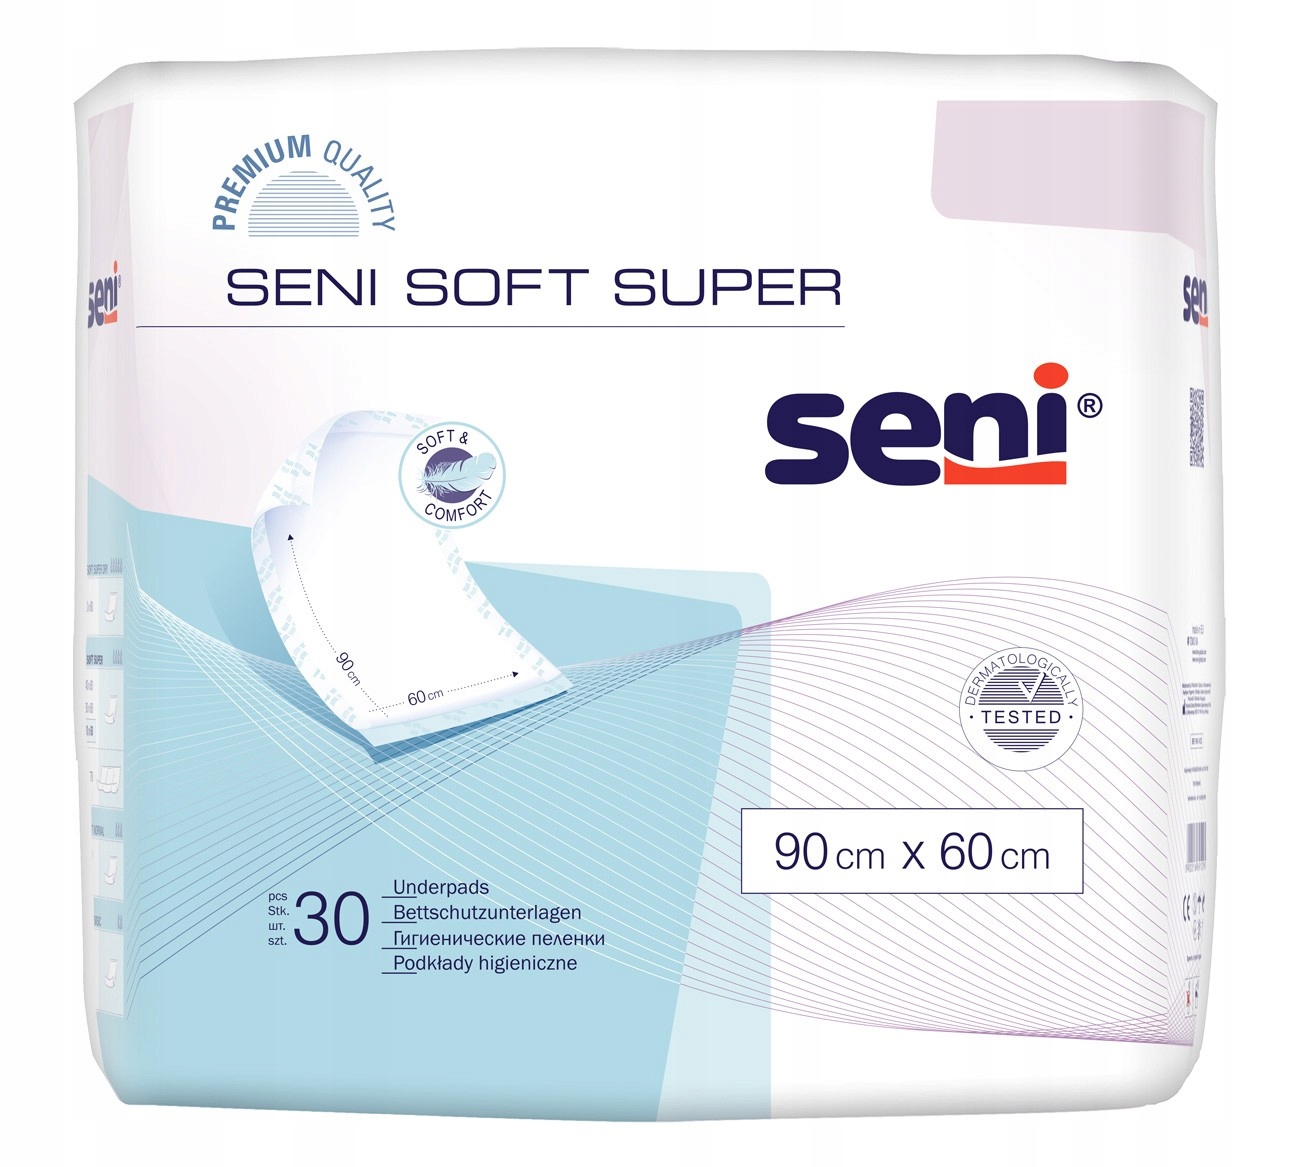 

Podkłady Seni Soft 60x90cm higieniczne 30szt